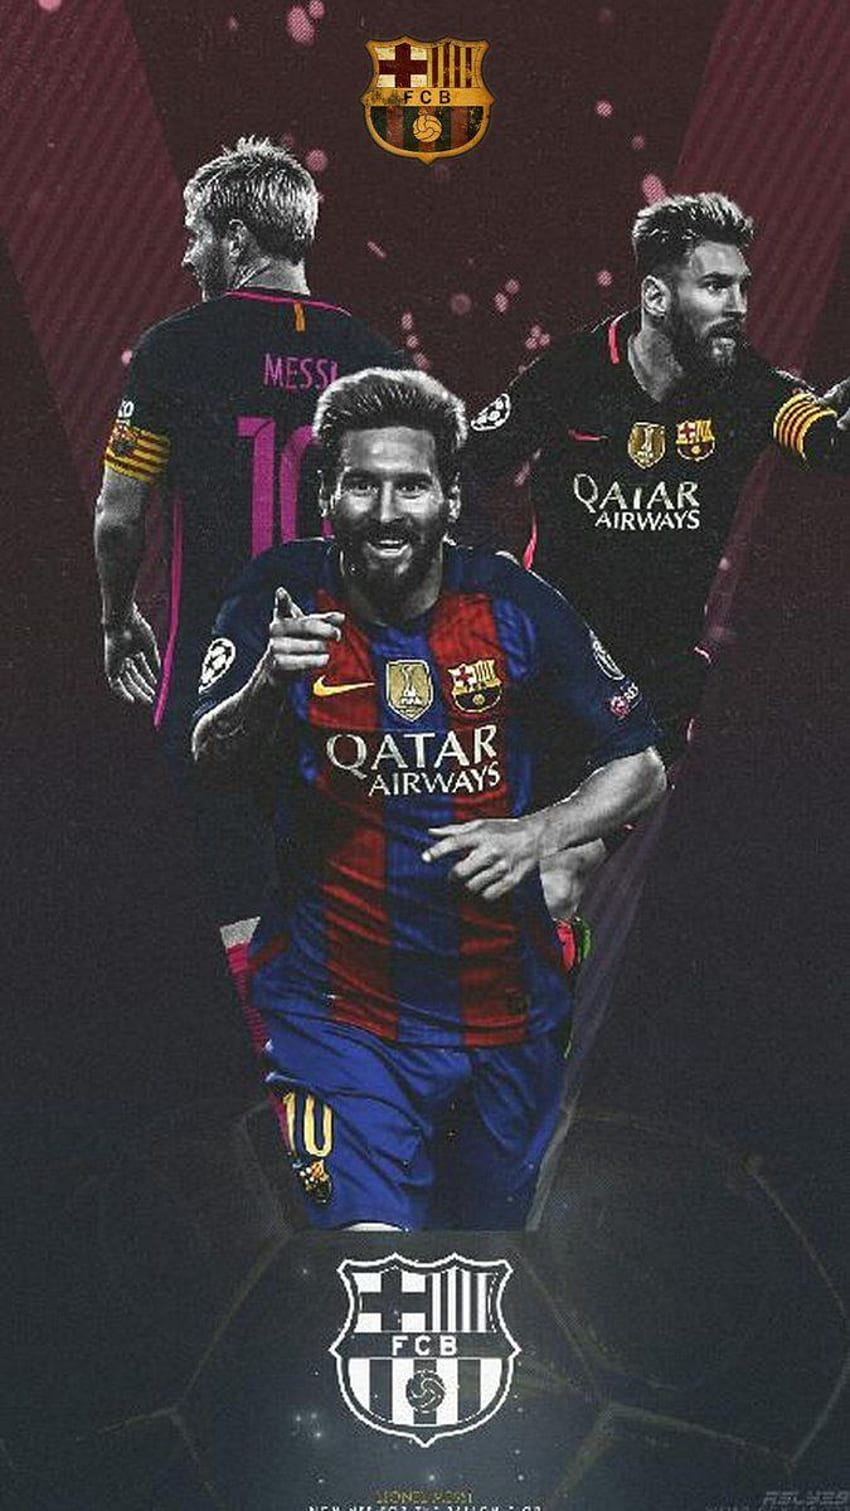 Được xem những bức ảnh nền Messi chắc chắn sẽ là niềm vui lớn cho các fan của siêu sao này. Hãy xem những thiết kế độc đáo và đẹp mắt của chiếc điện thoại của bạn khi bạn đặt hình nền Messi lên màn hình!